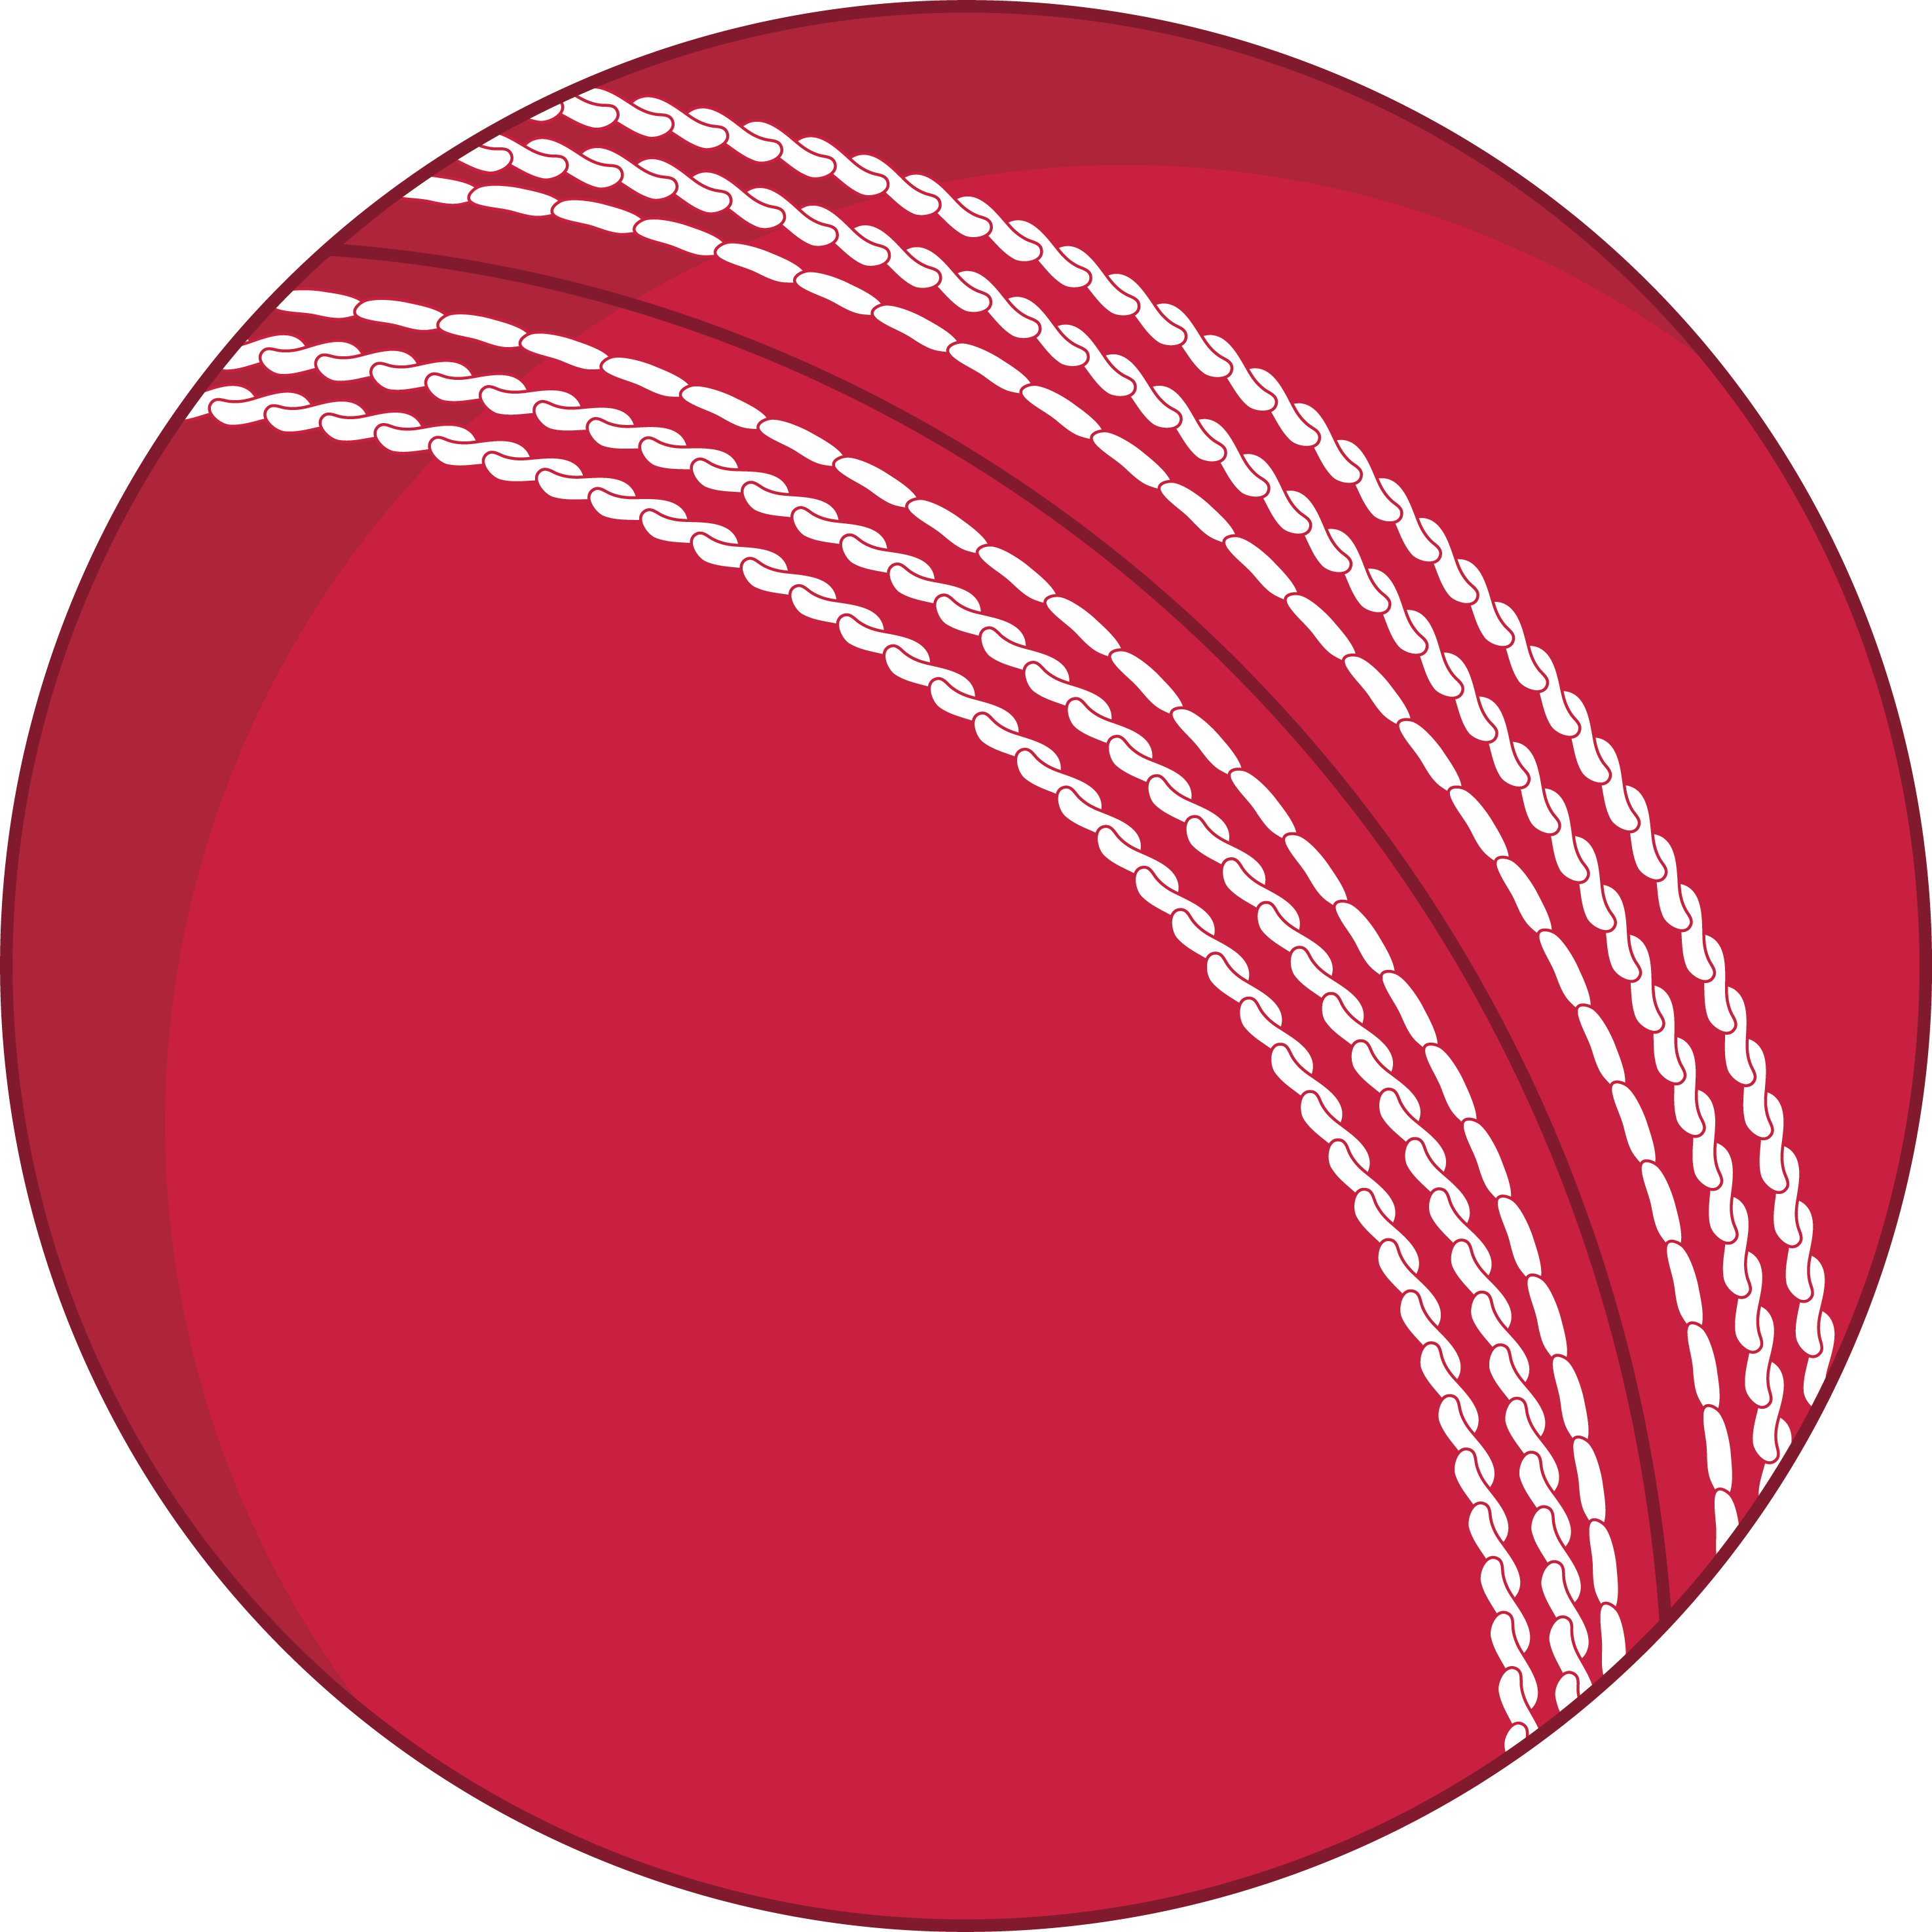 Cricket Ball PNG скачать бесплатно